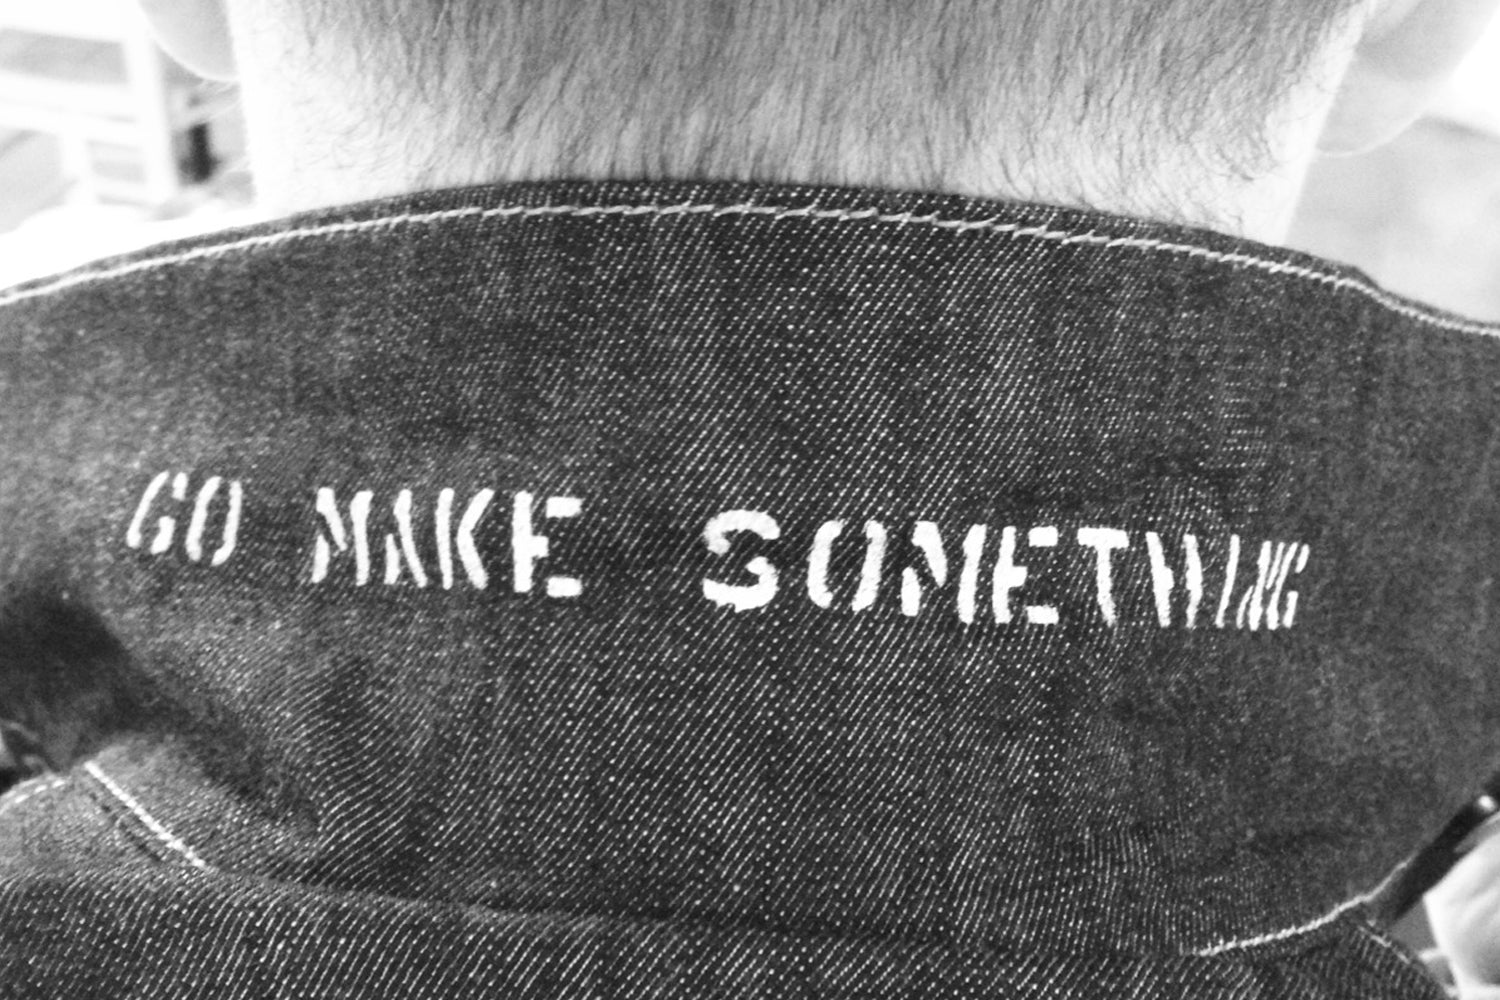 Go Make Something